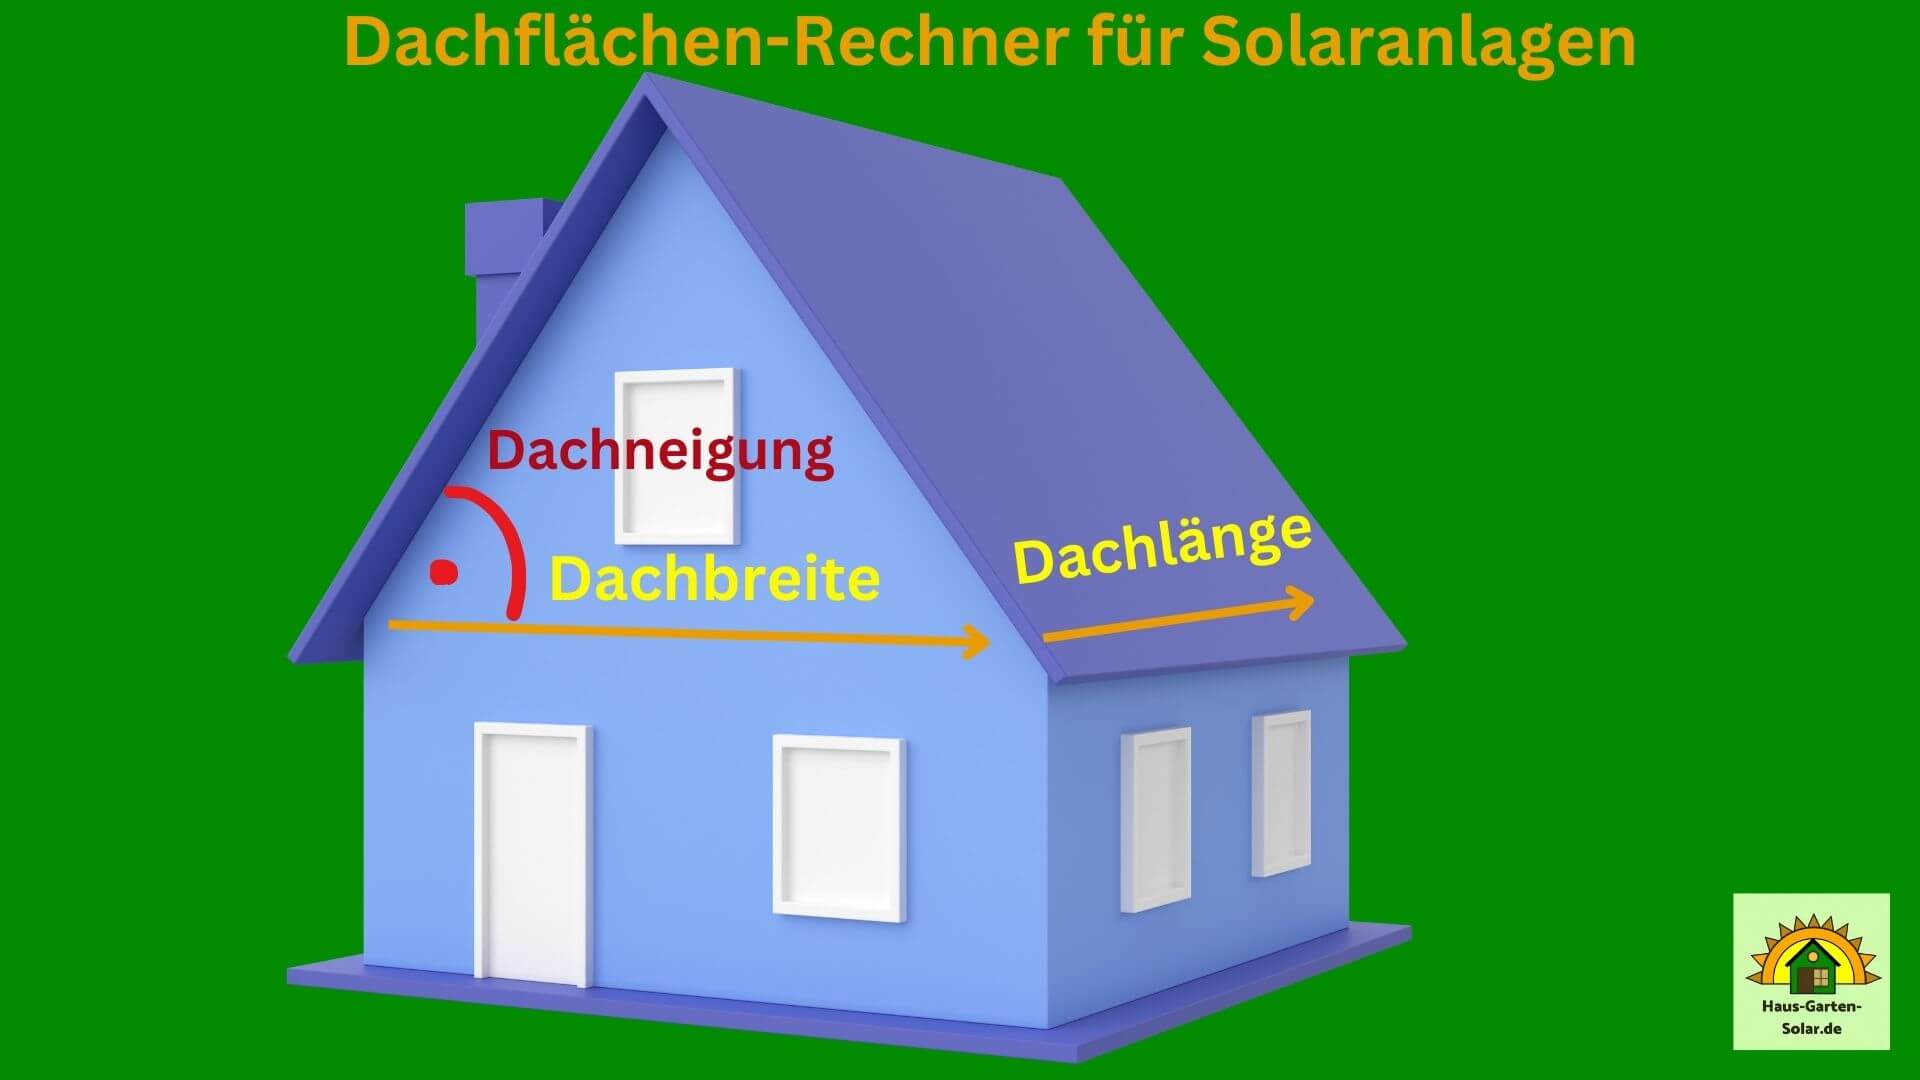 Dachflächen-Rechner für Solaranlagen 